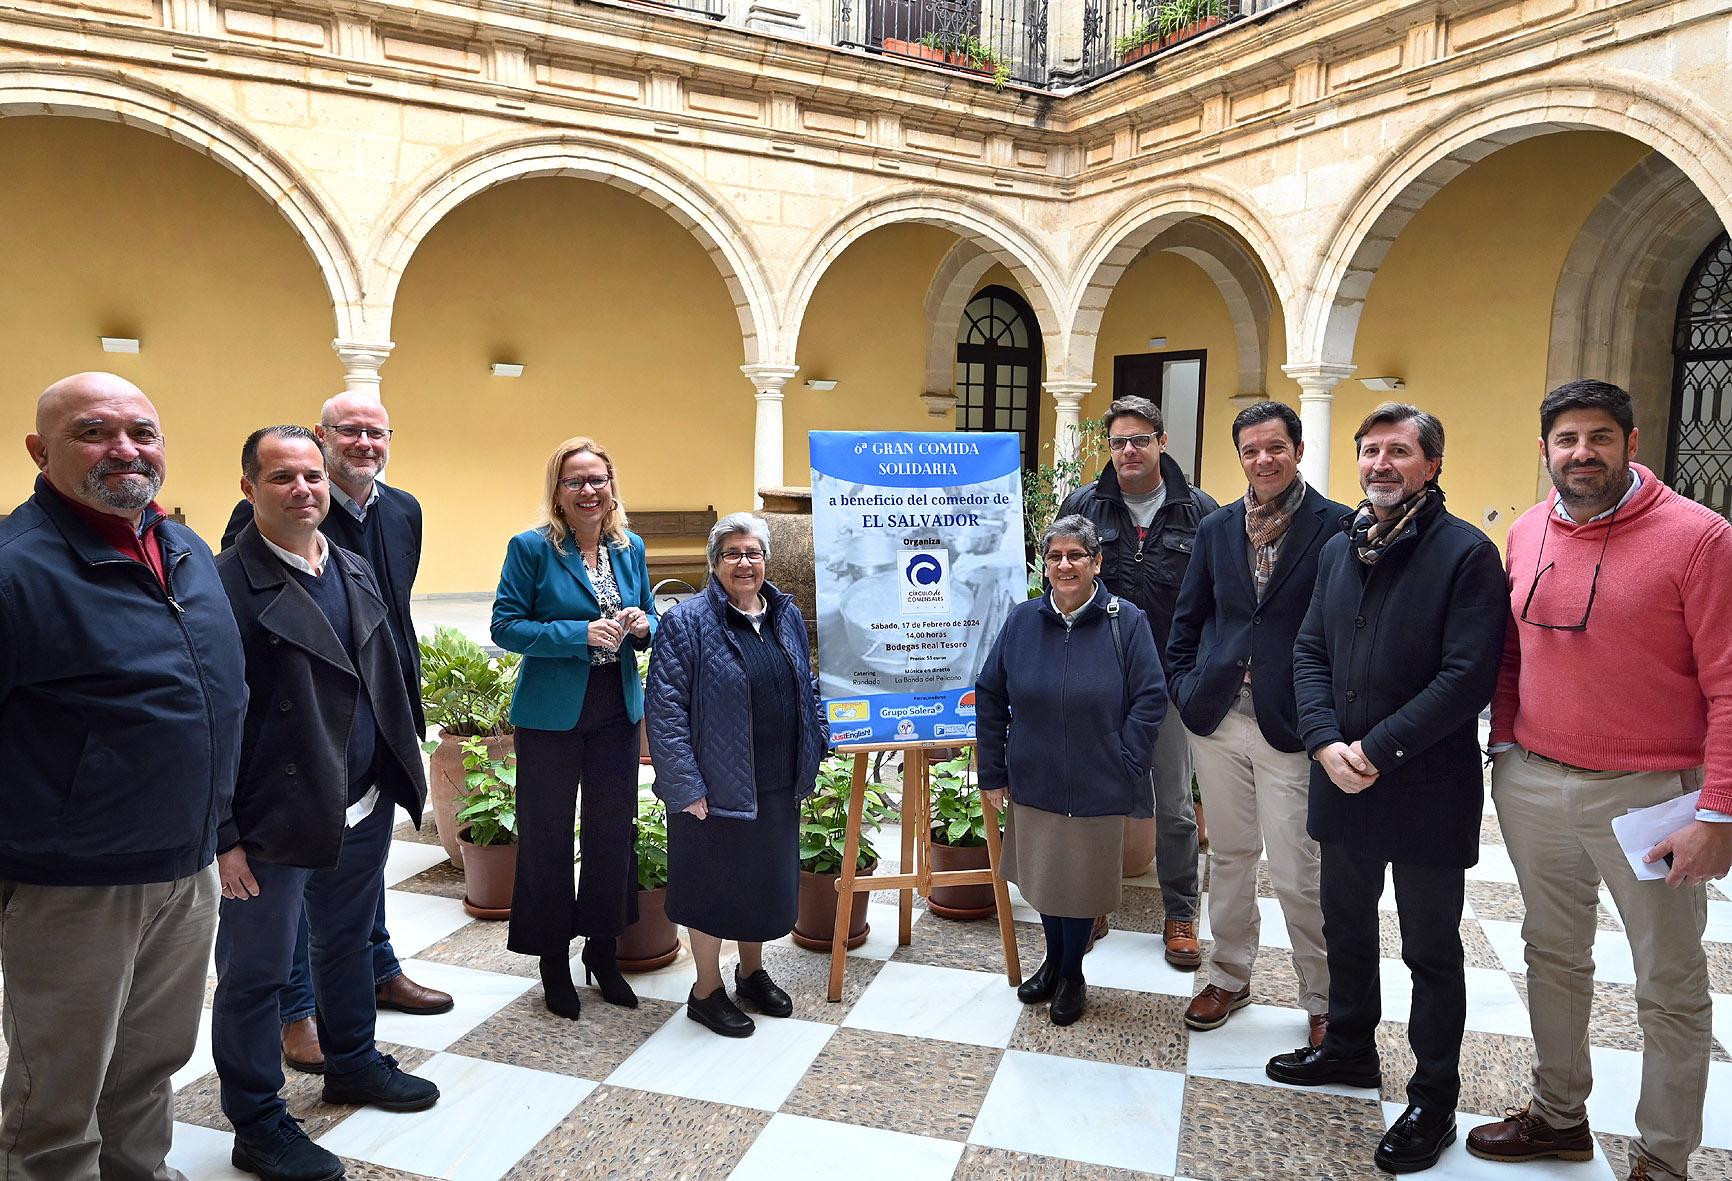 Este 17 de febrero, VI Comida Solidaria del Círculo de Comensales de Jerez a favor del Comedor El Salvador